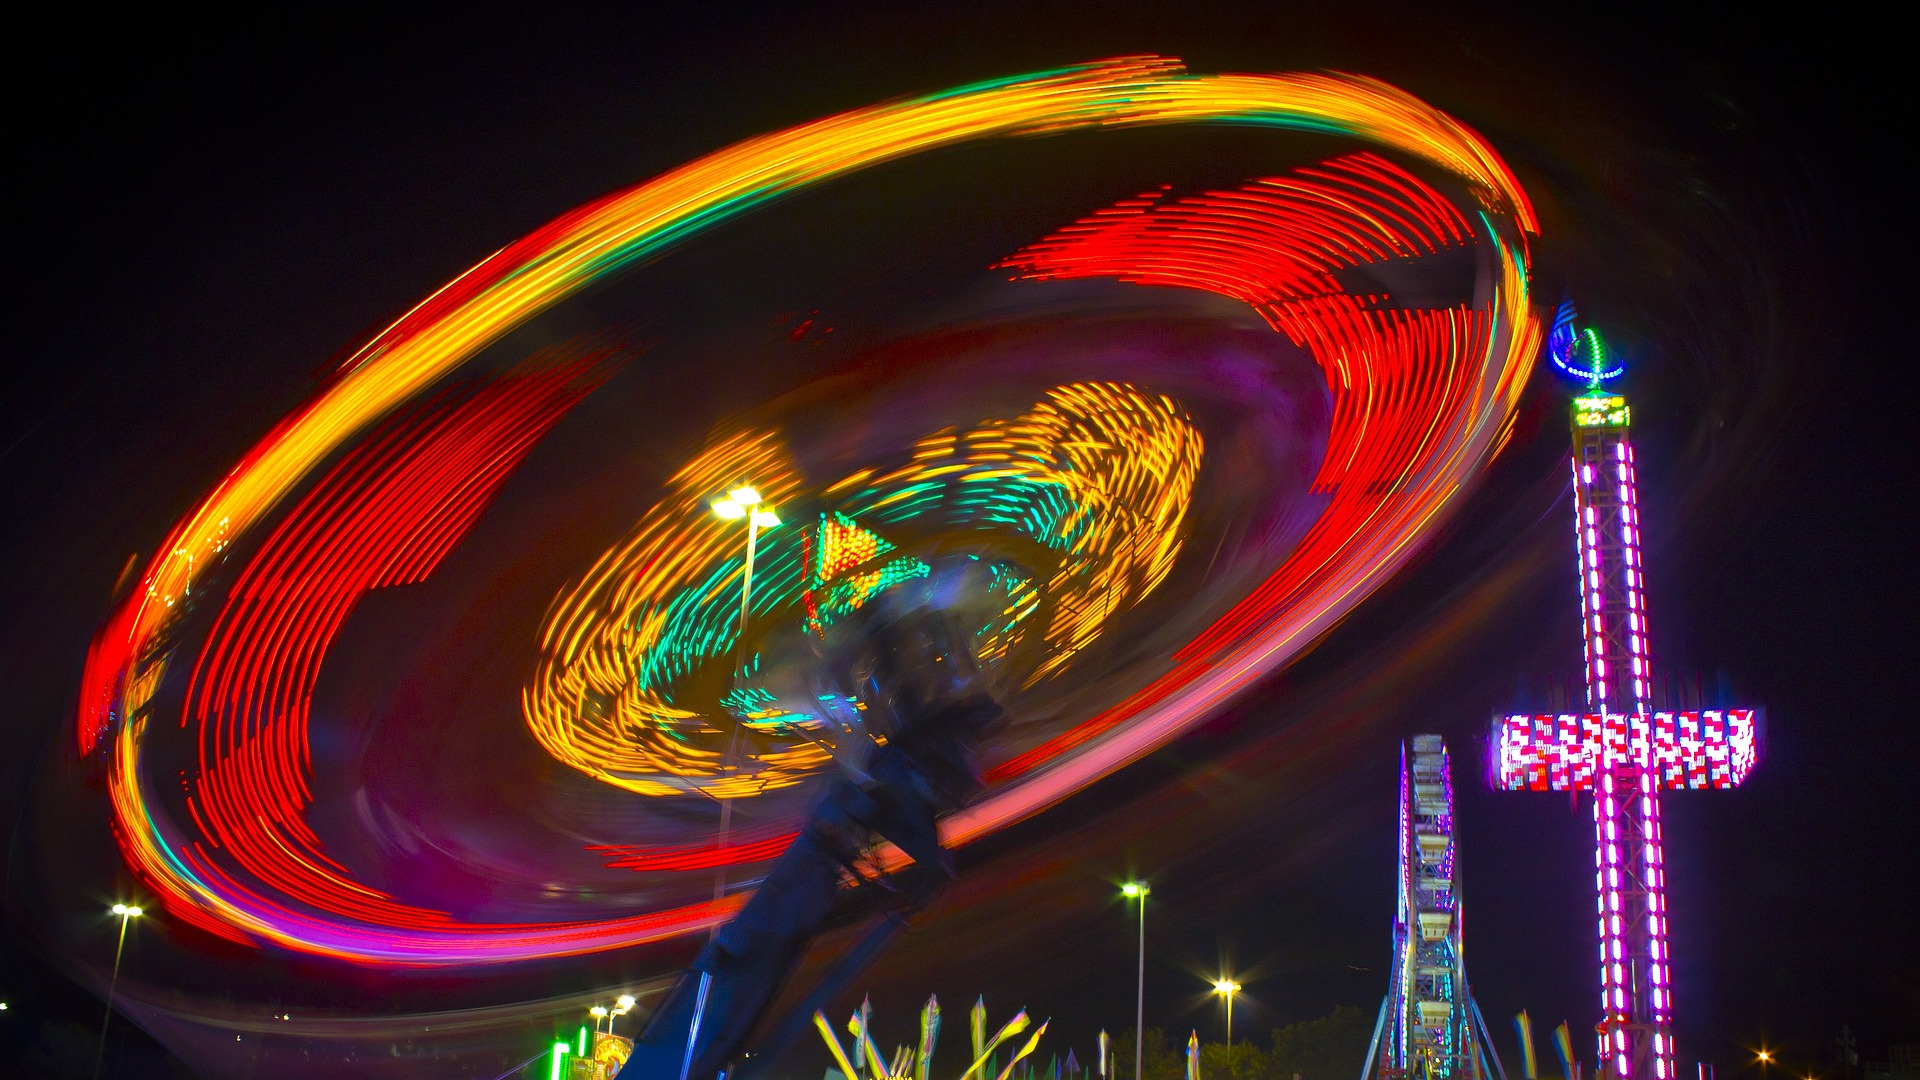 Neon colored carnival ride